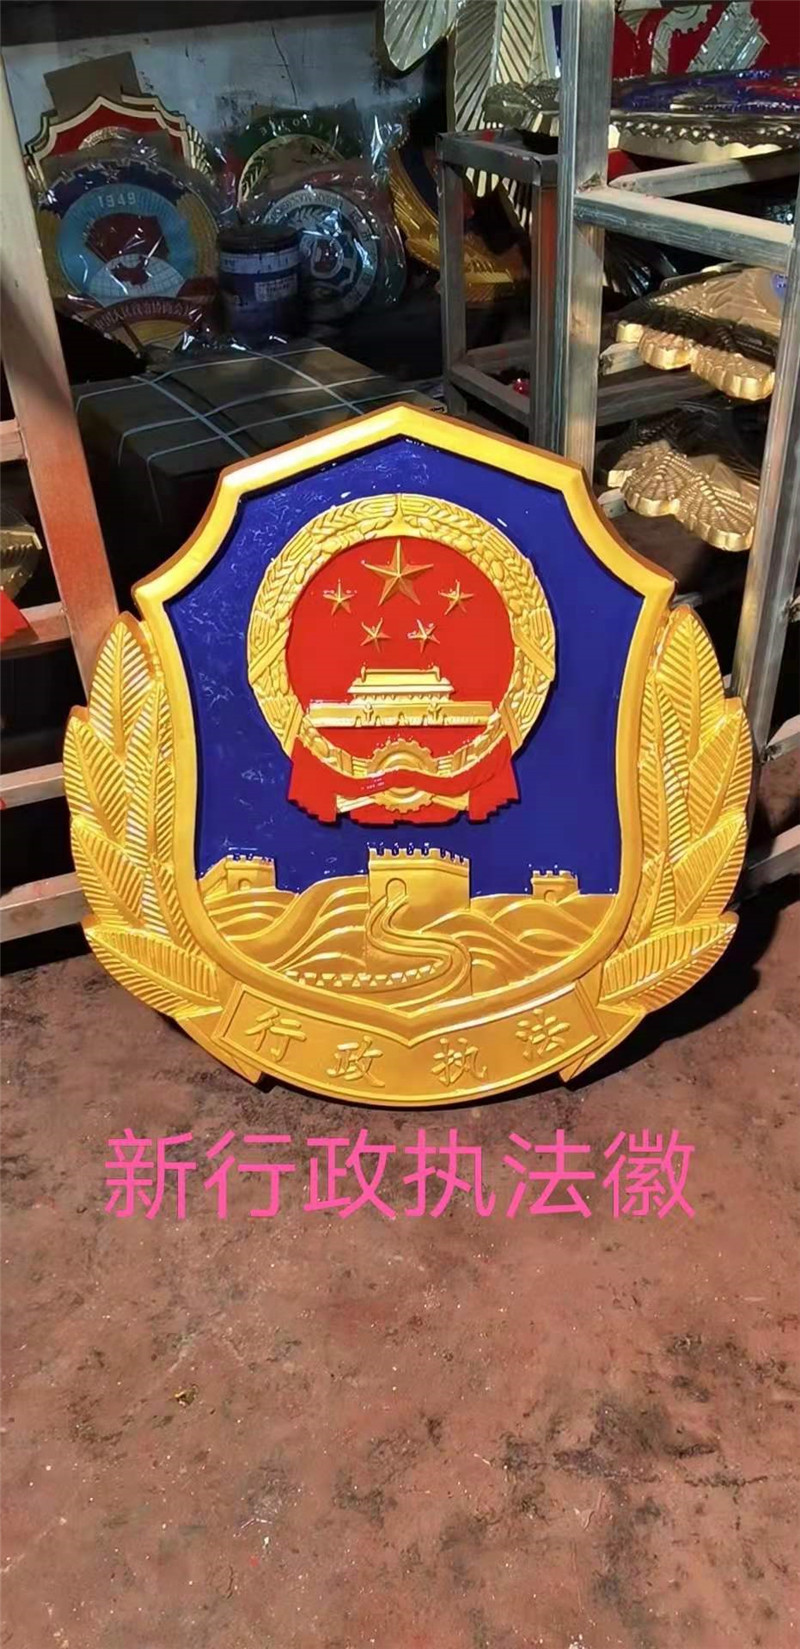 新行政执法徽1